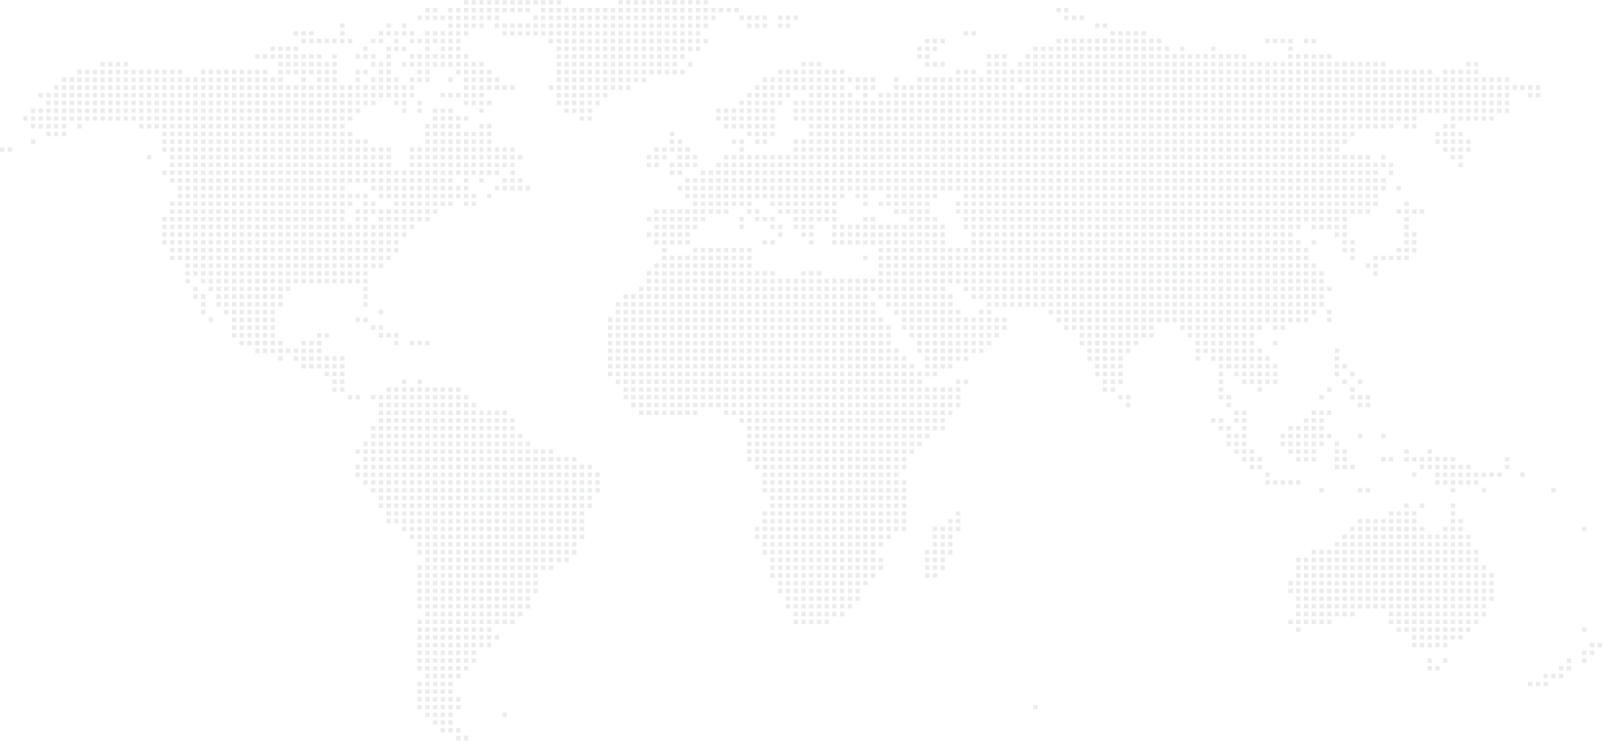 מפת העולם